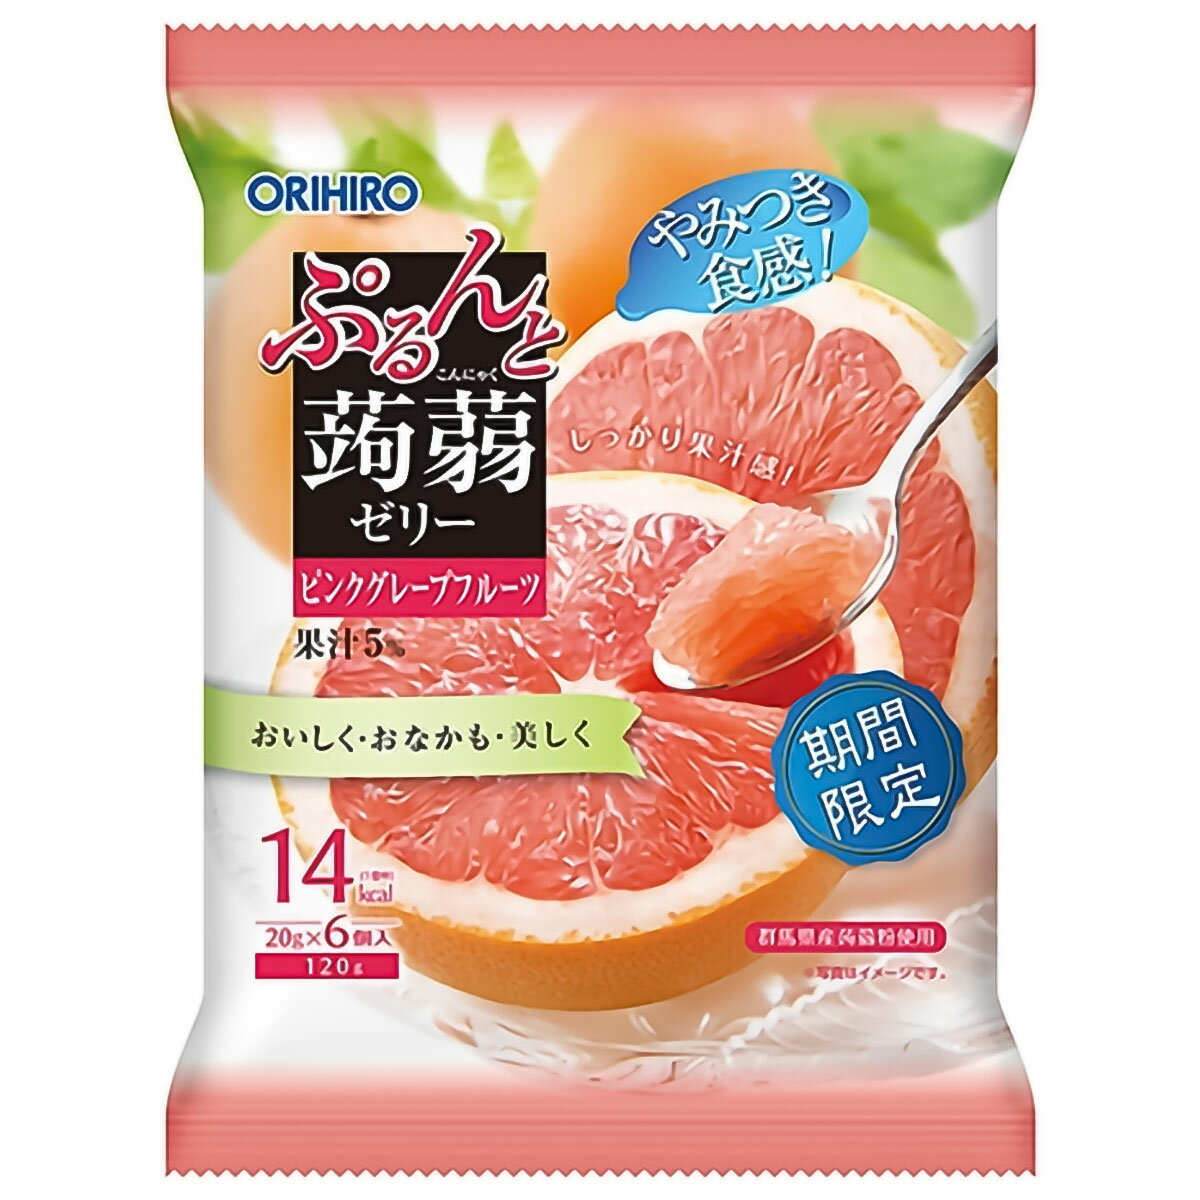 オリヒロ ぷるんと蒟蒻ゼリーパウチ ピンクグレープフルーツ 20g×6個